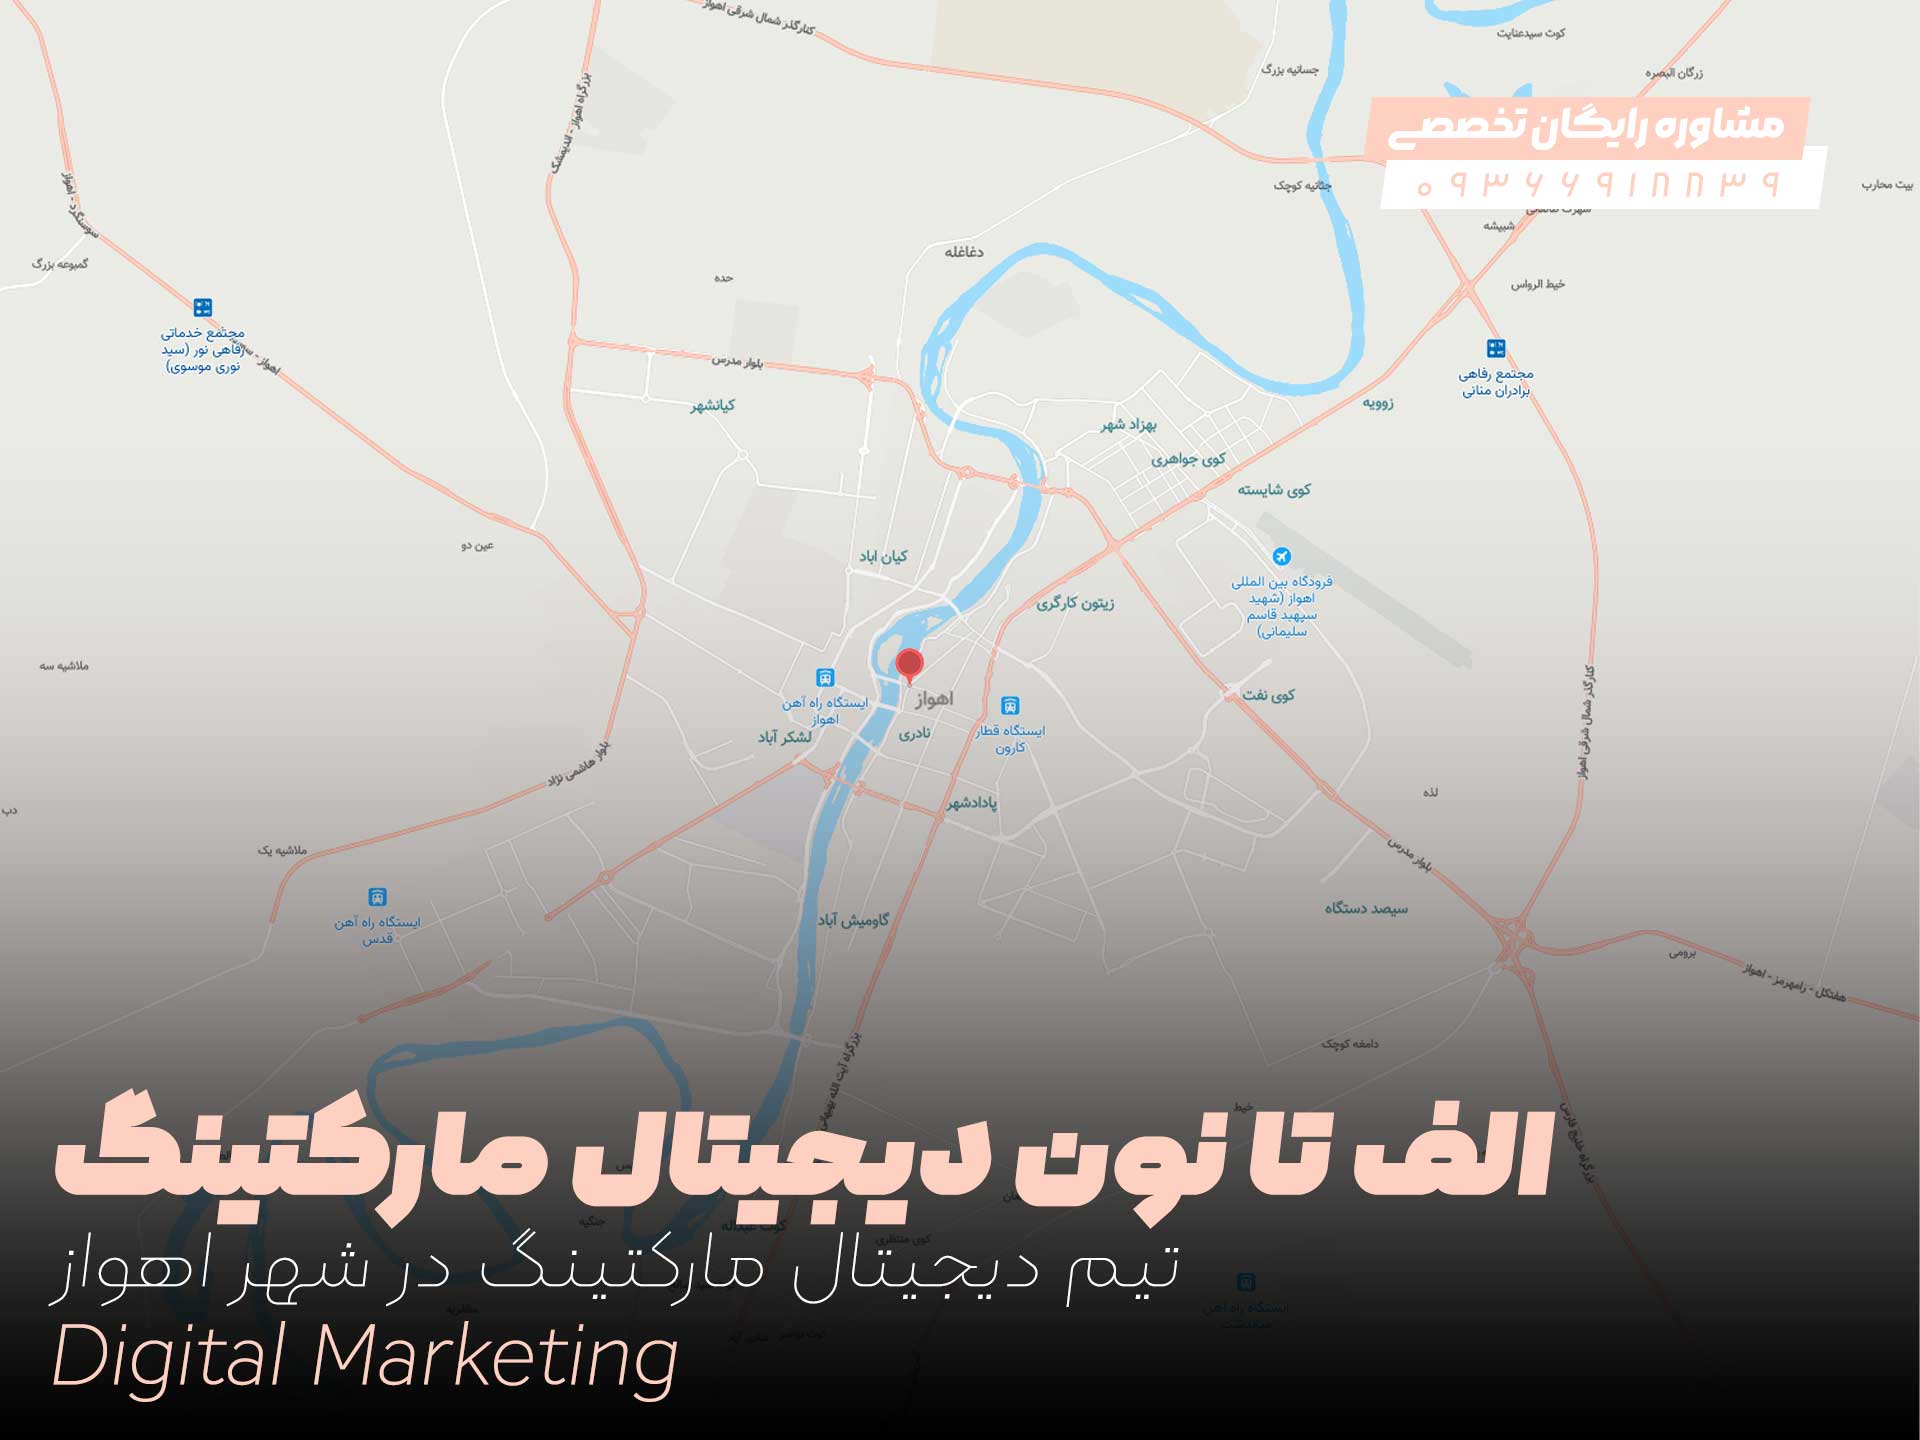 از "الف" تا "نون" دیجیتال مارکتینگ در شهر اهواز